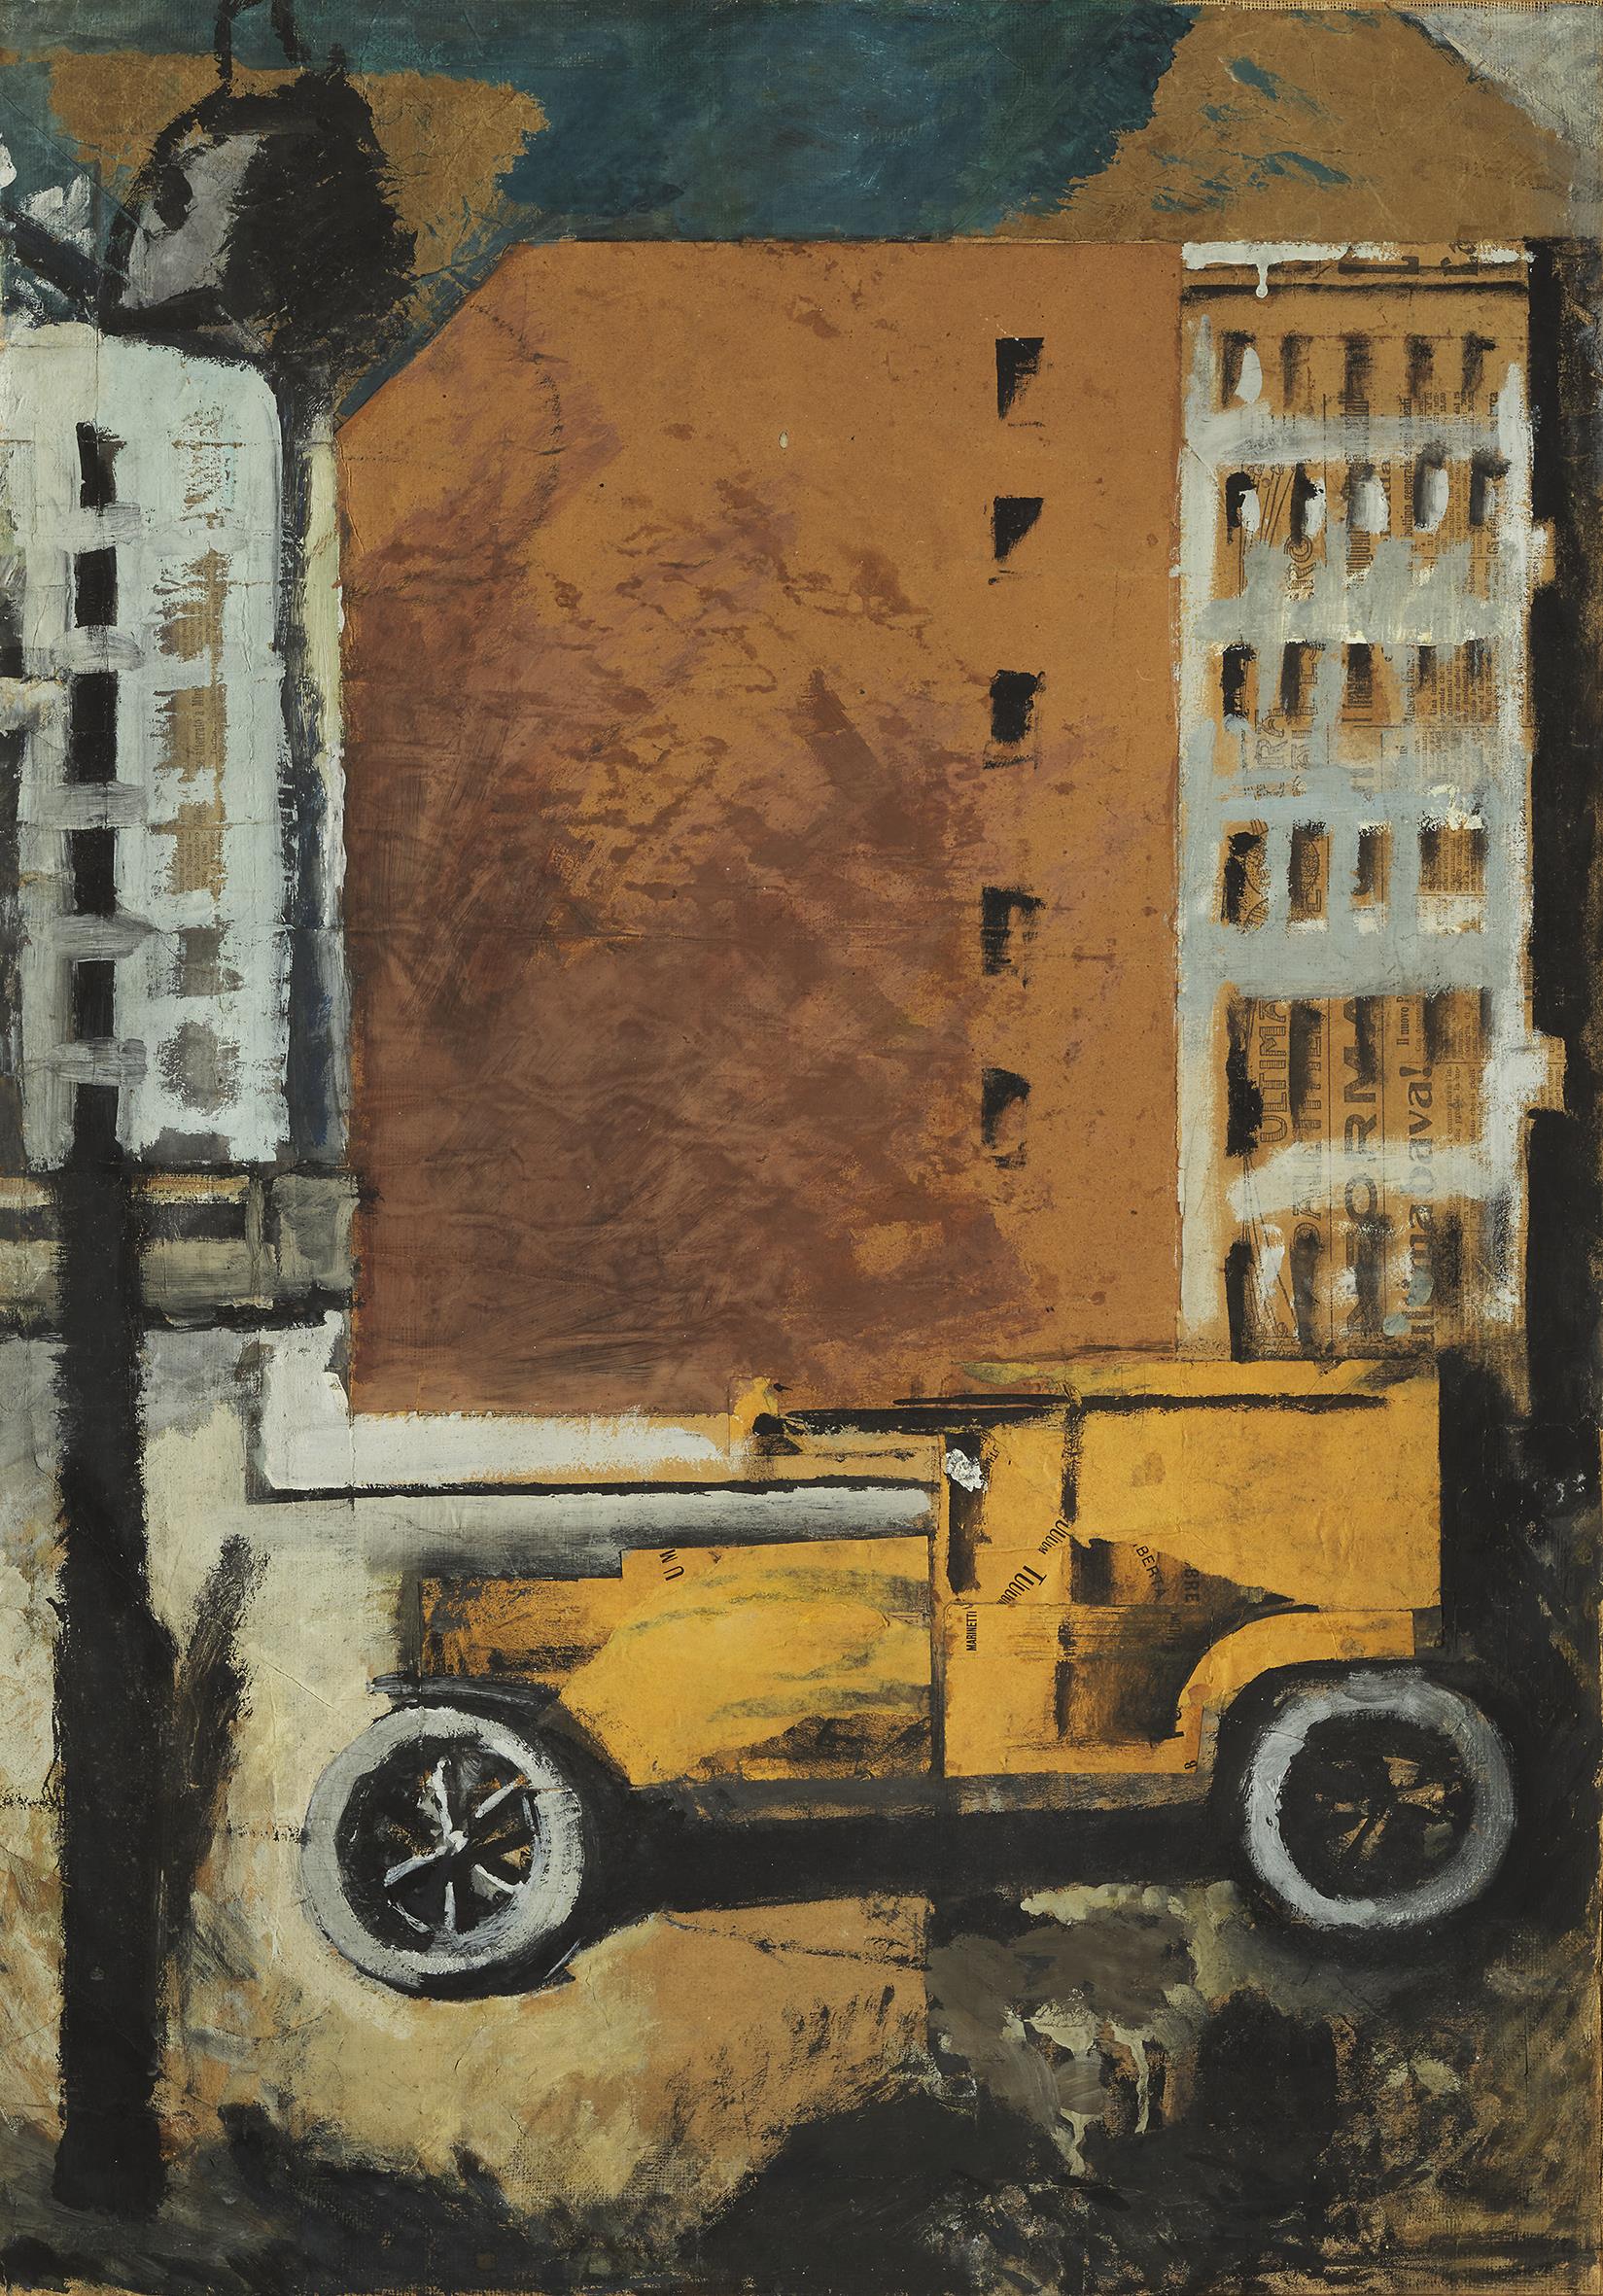 Mario Sironi: Il camion giallo, 1919 tempera e collage su carta applicata su tela, 89 x 63 cm, collezione privata (in deposito al Museo MAGA di Gallarate © Mario Sironi, by SIAE 2021 